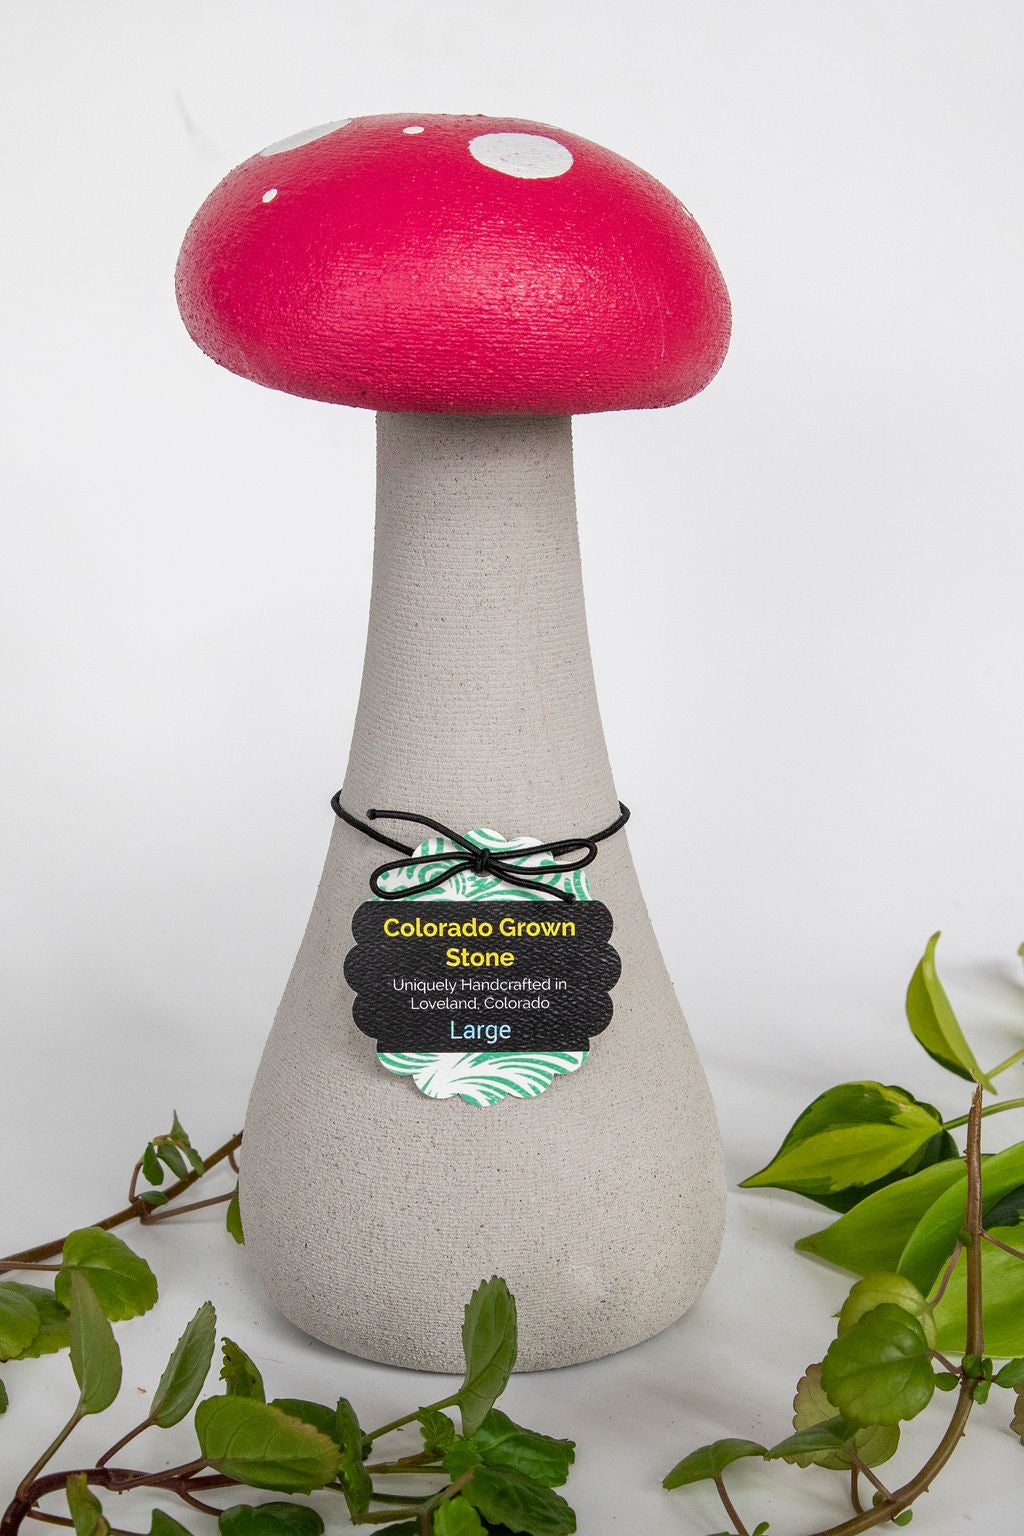 Concrete Garden Mushroom Sculptures - Pretty in Pink